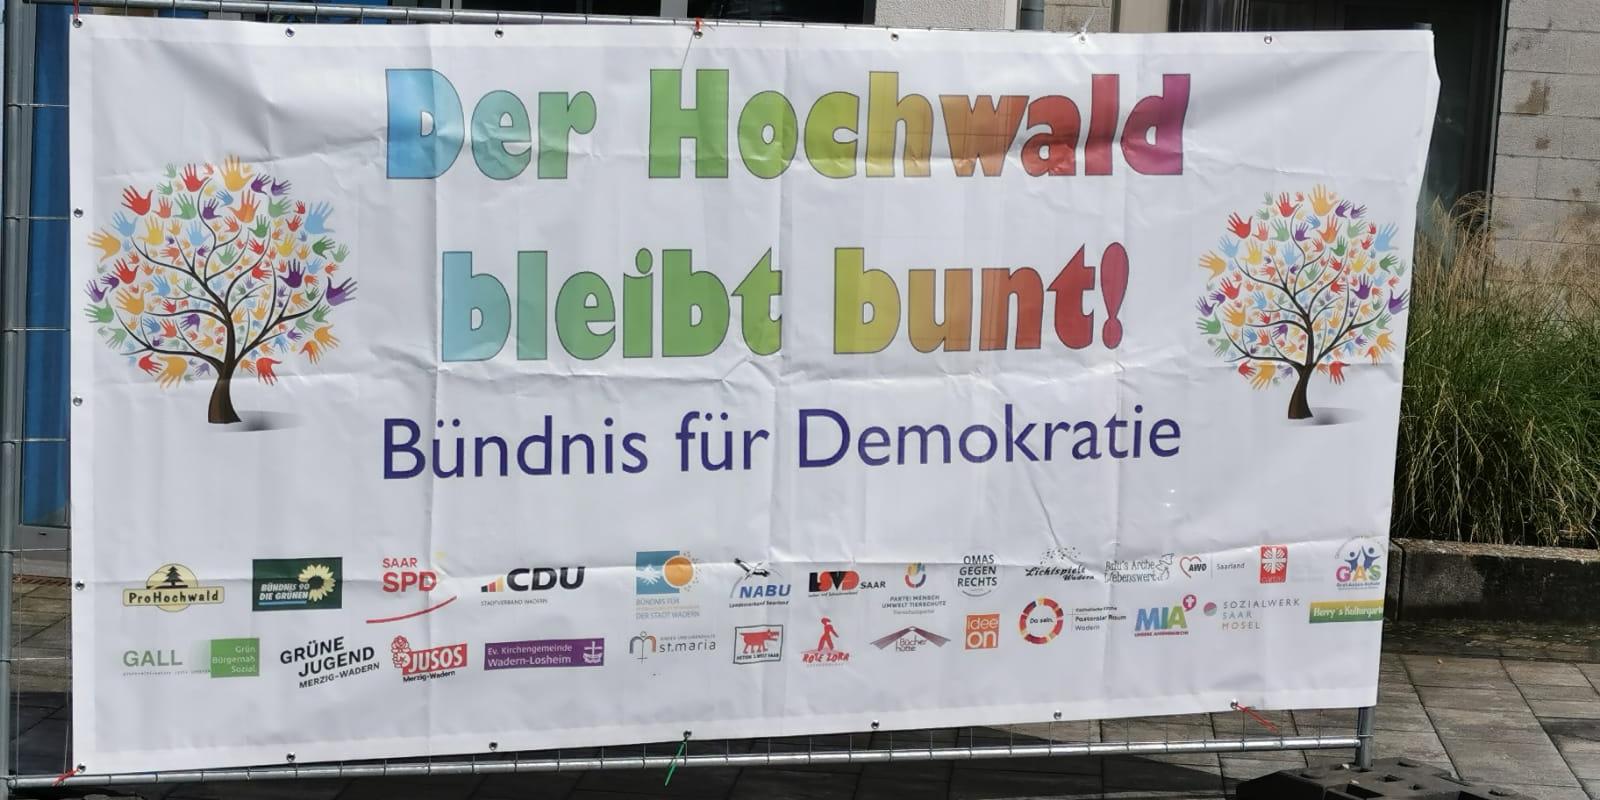 Plakat der Hochwald bleibt Bunt Kundgebung 26.05.24